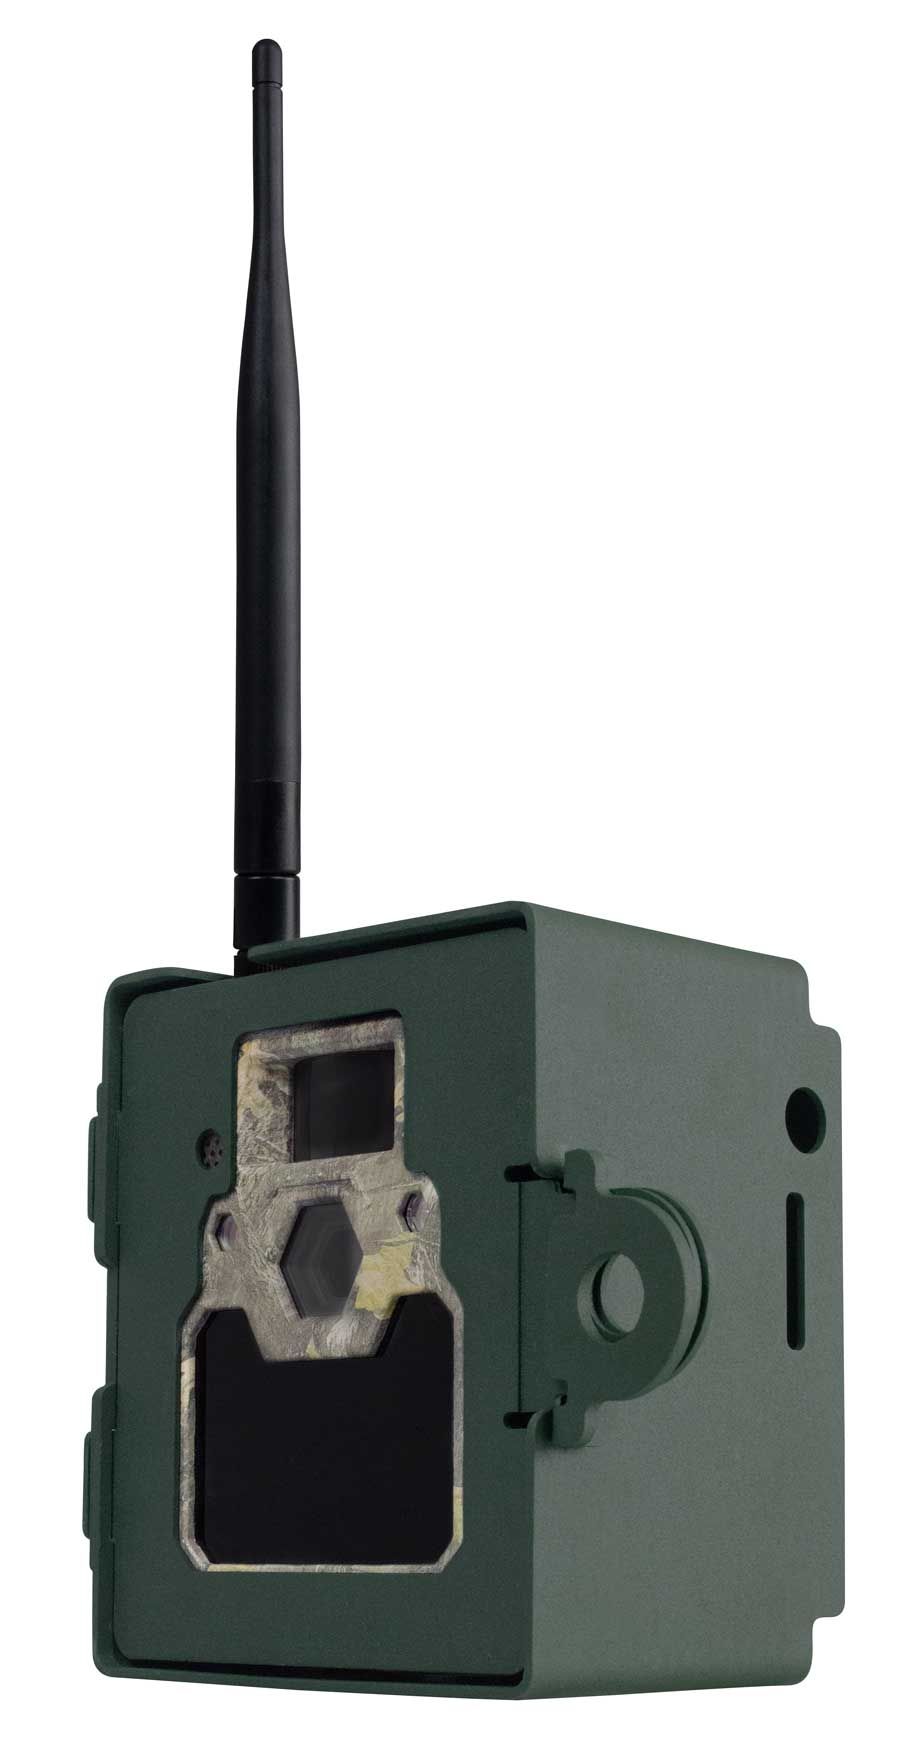 ICU Metallbox für 4G LTE Wildkamera mit Kamera von vorne